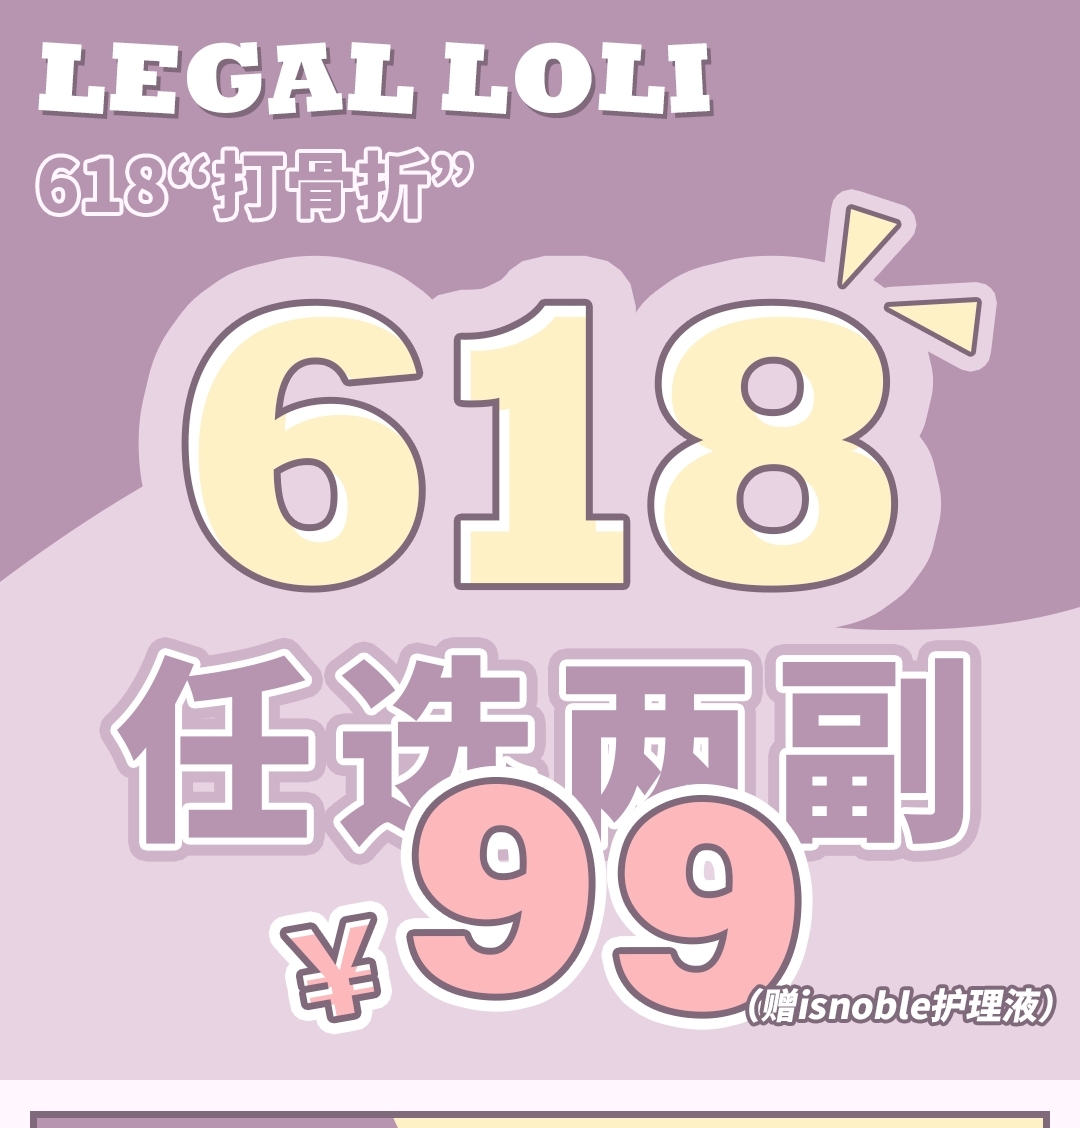 【秒杀】legalloli·NobleGirl 福利不大， 怎么敢邀你参加!?